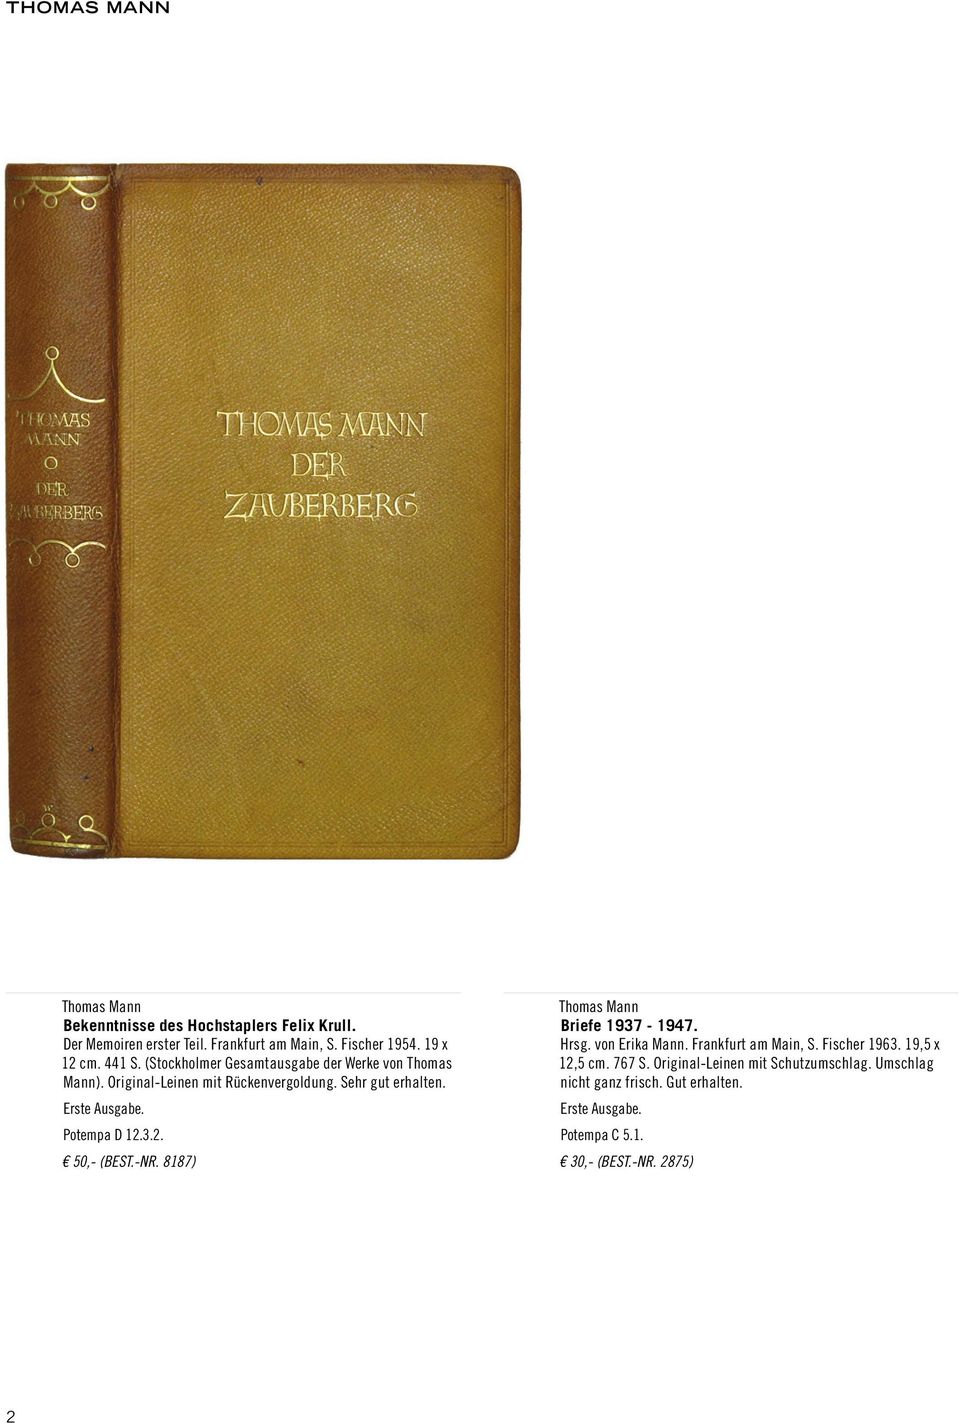 Potempa D 12.3.2. 50,- (Best.-Nr. 8187) Briefe 1937-1947. Hrsg. von Erika Mann. Frankfurt am Main, S. Fischer 1963.